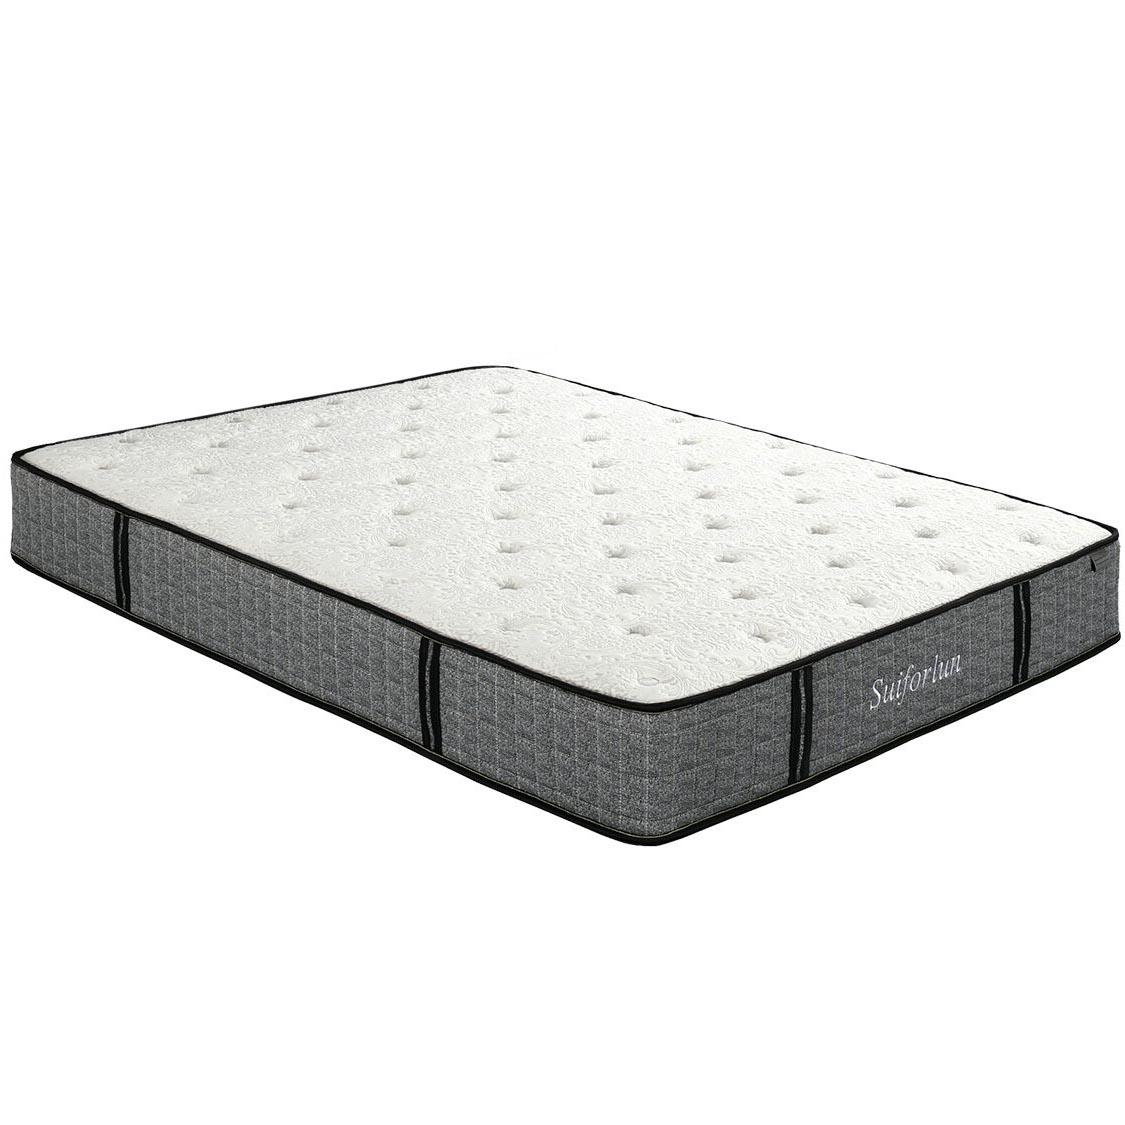 Suiforlun mattress comfortable queen hybrid mattress customized for family